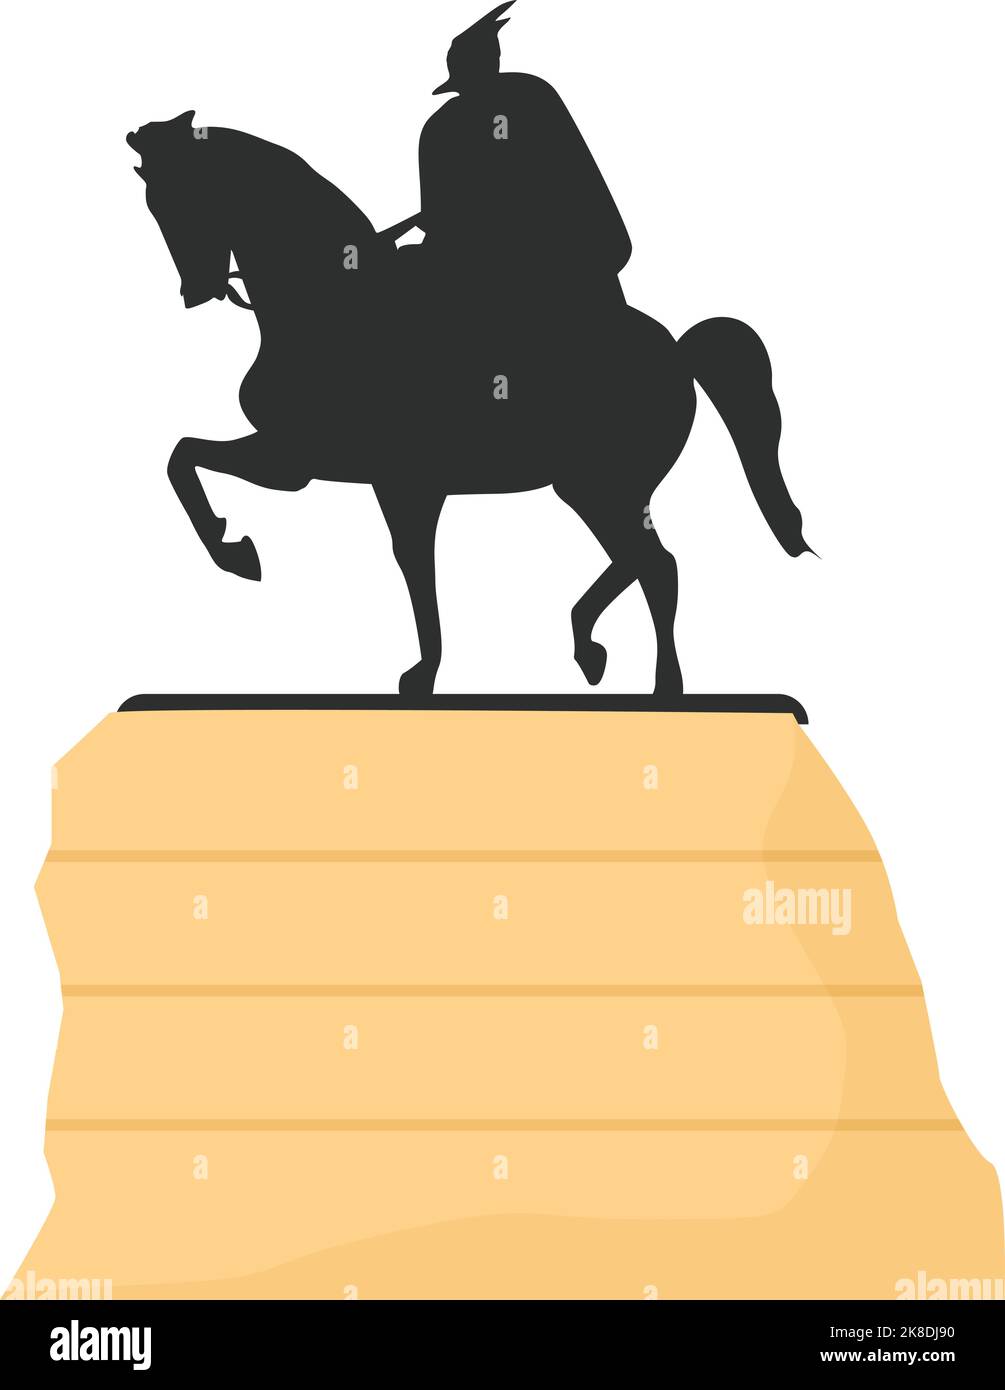 Albanie monument cheval icône caricature vecteur. Cartographier le folk. Pont europe Illustration de Vecteur